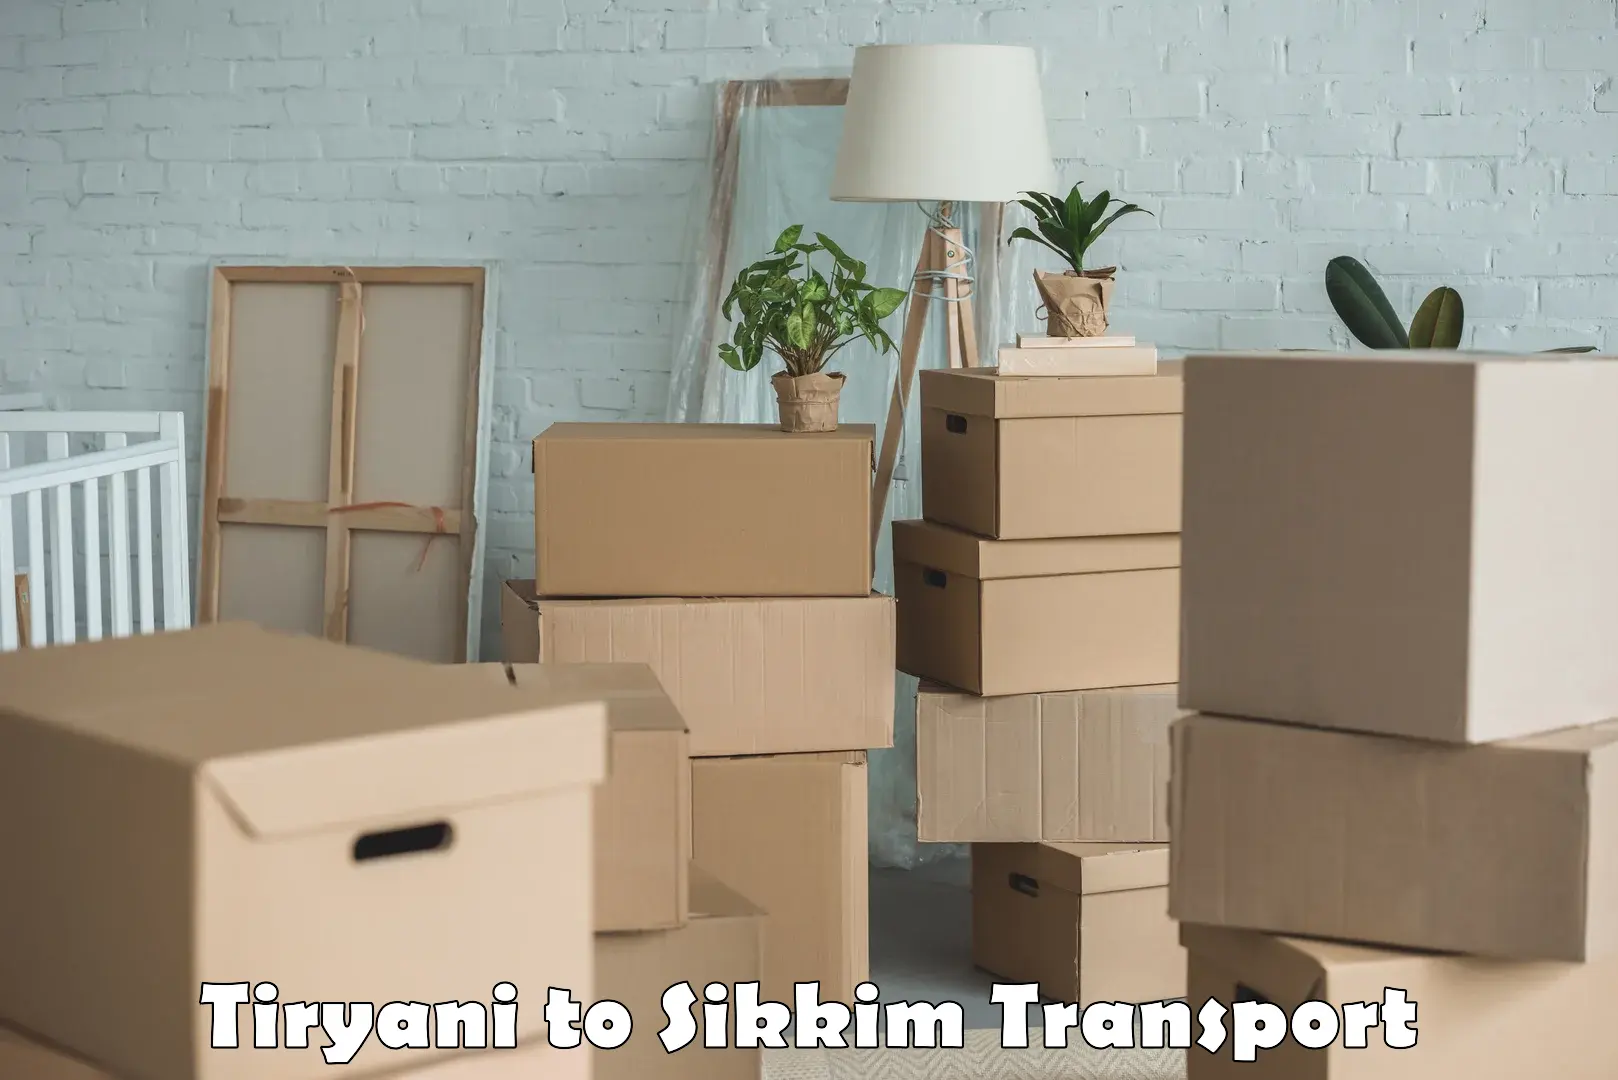 Online transport booking Tiryani to Rangpo